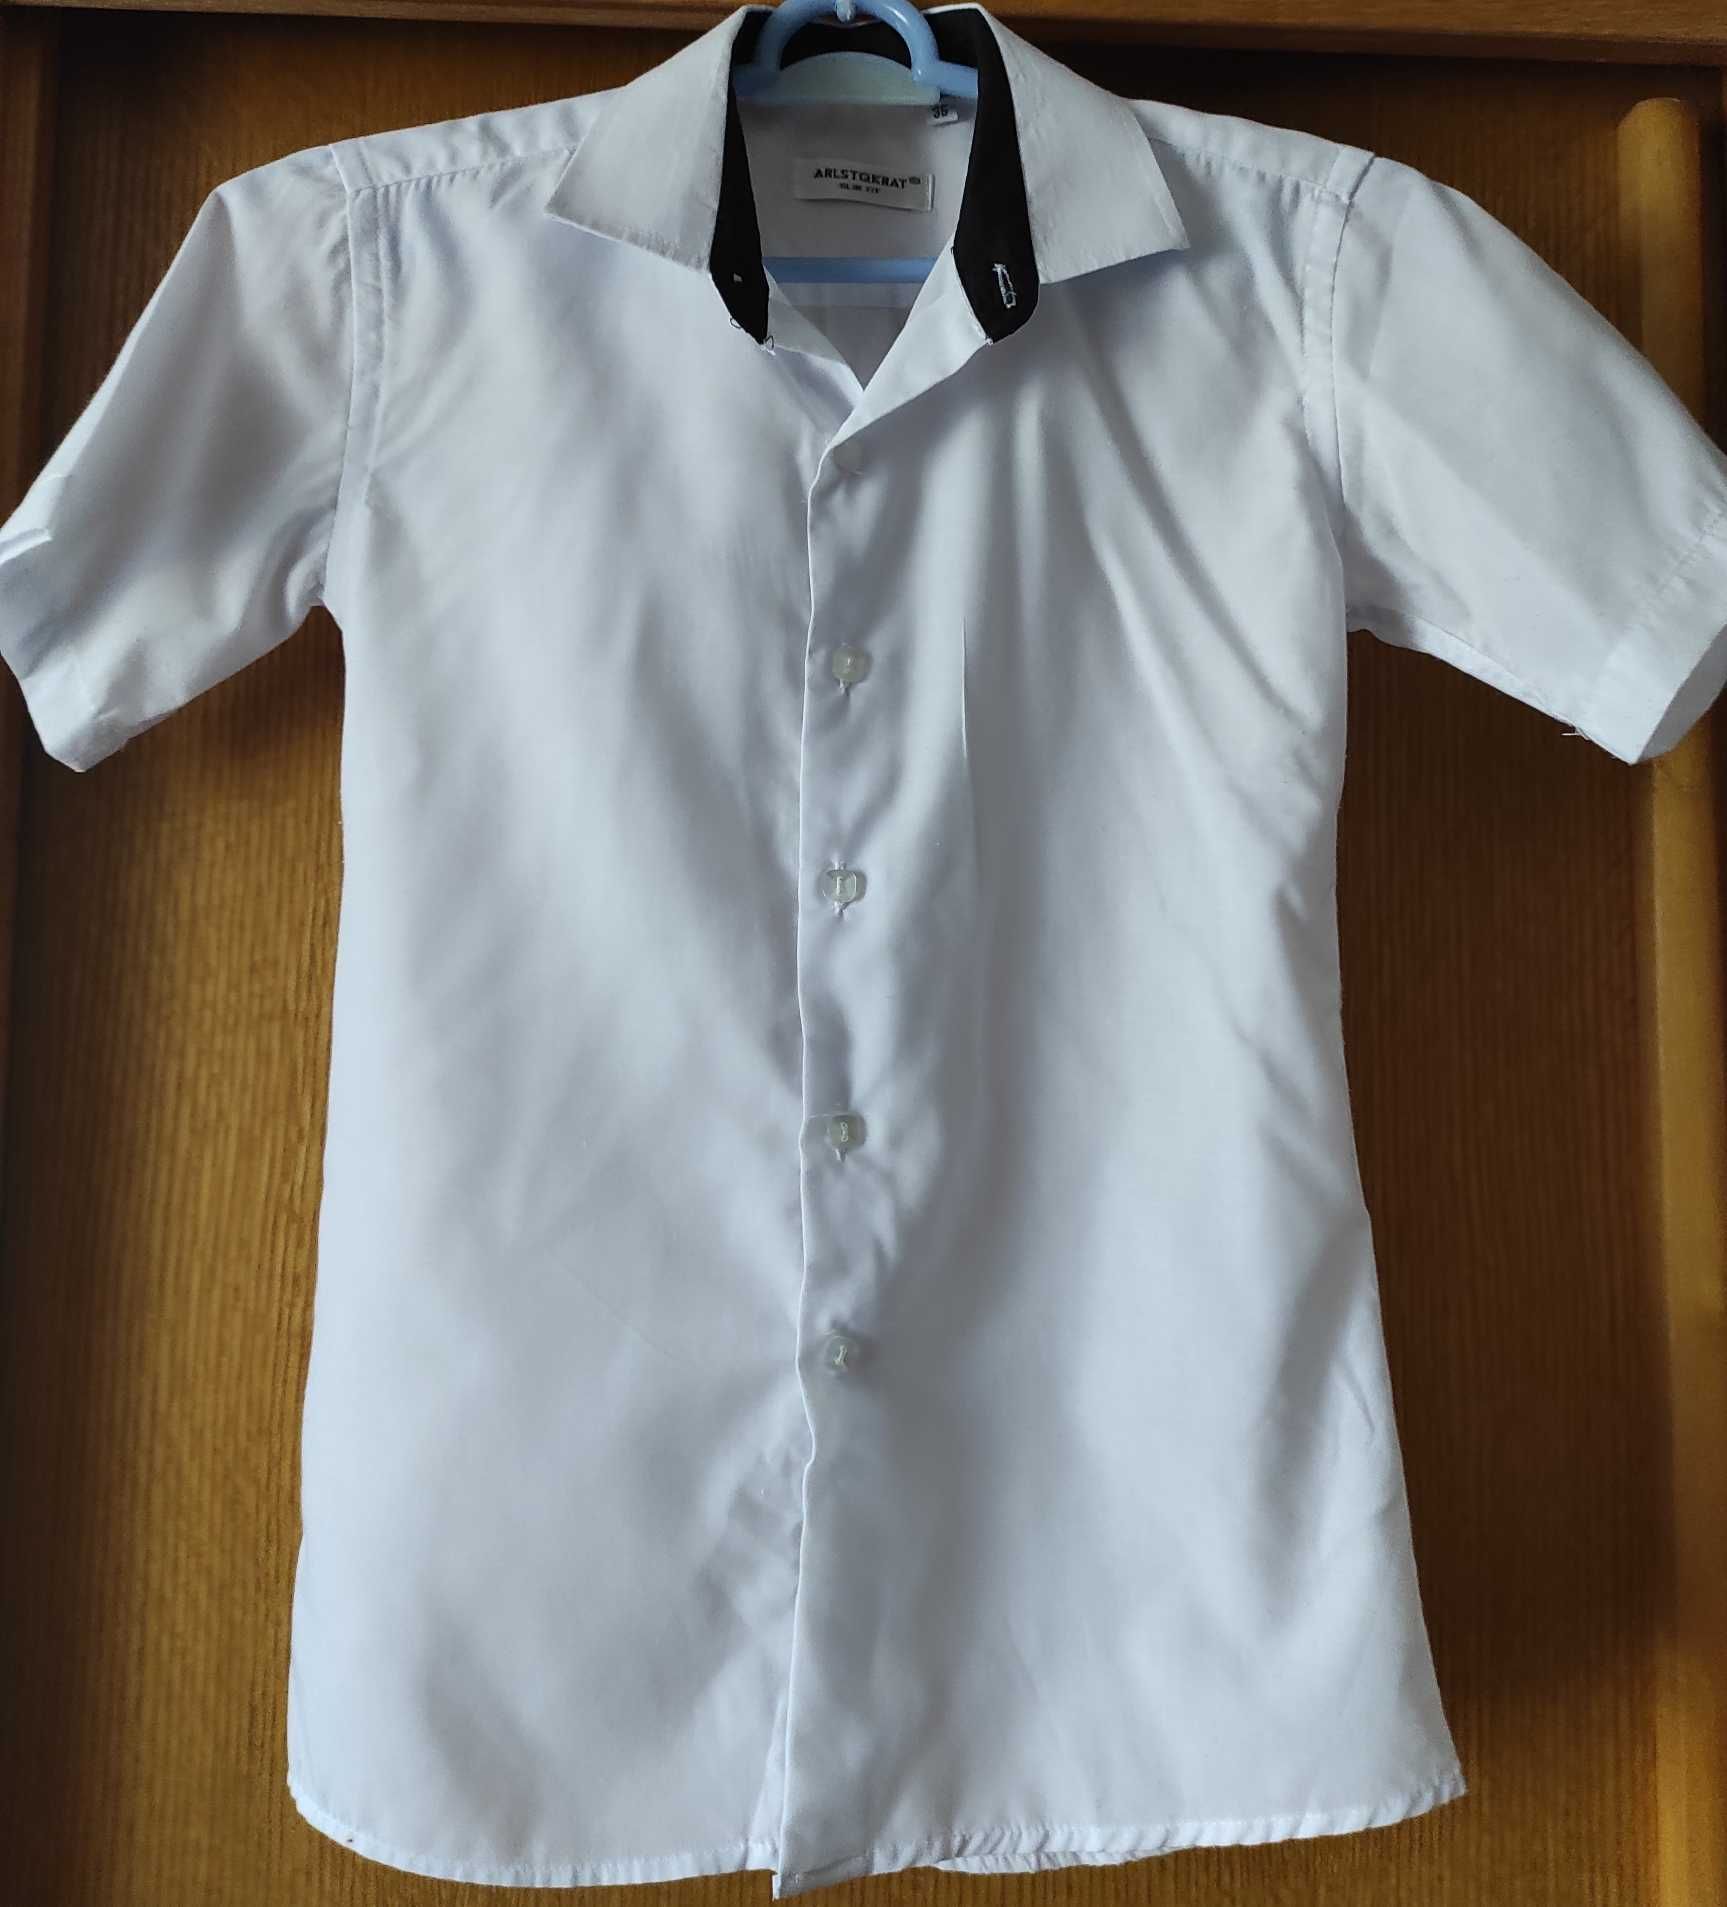 Белая школьная рубашка ARLSTQRAT, размер 35, 11-13 лет, короткий рукав